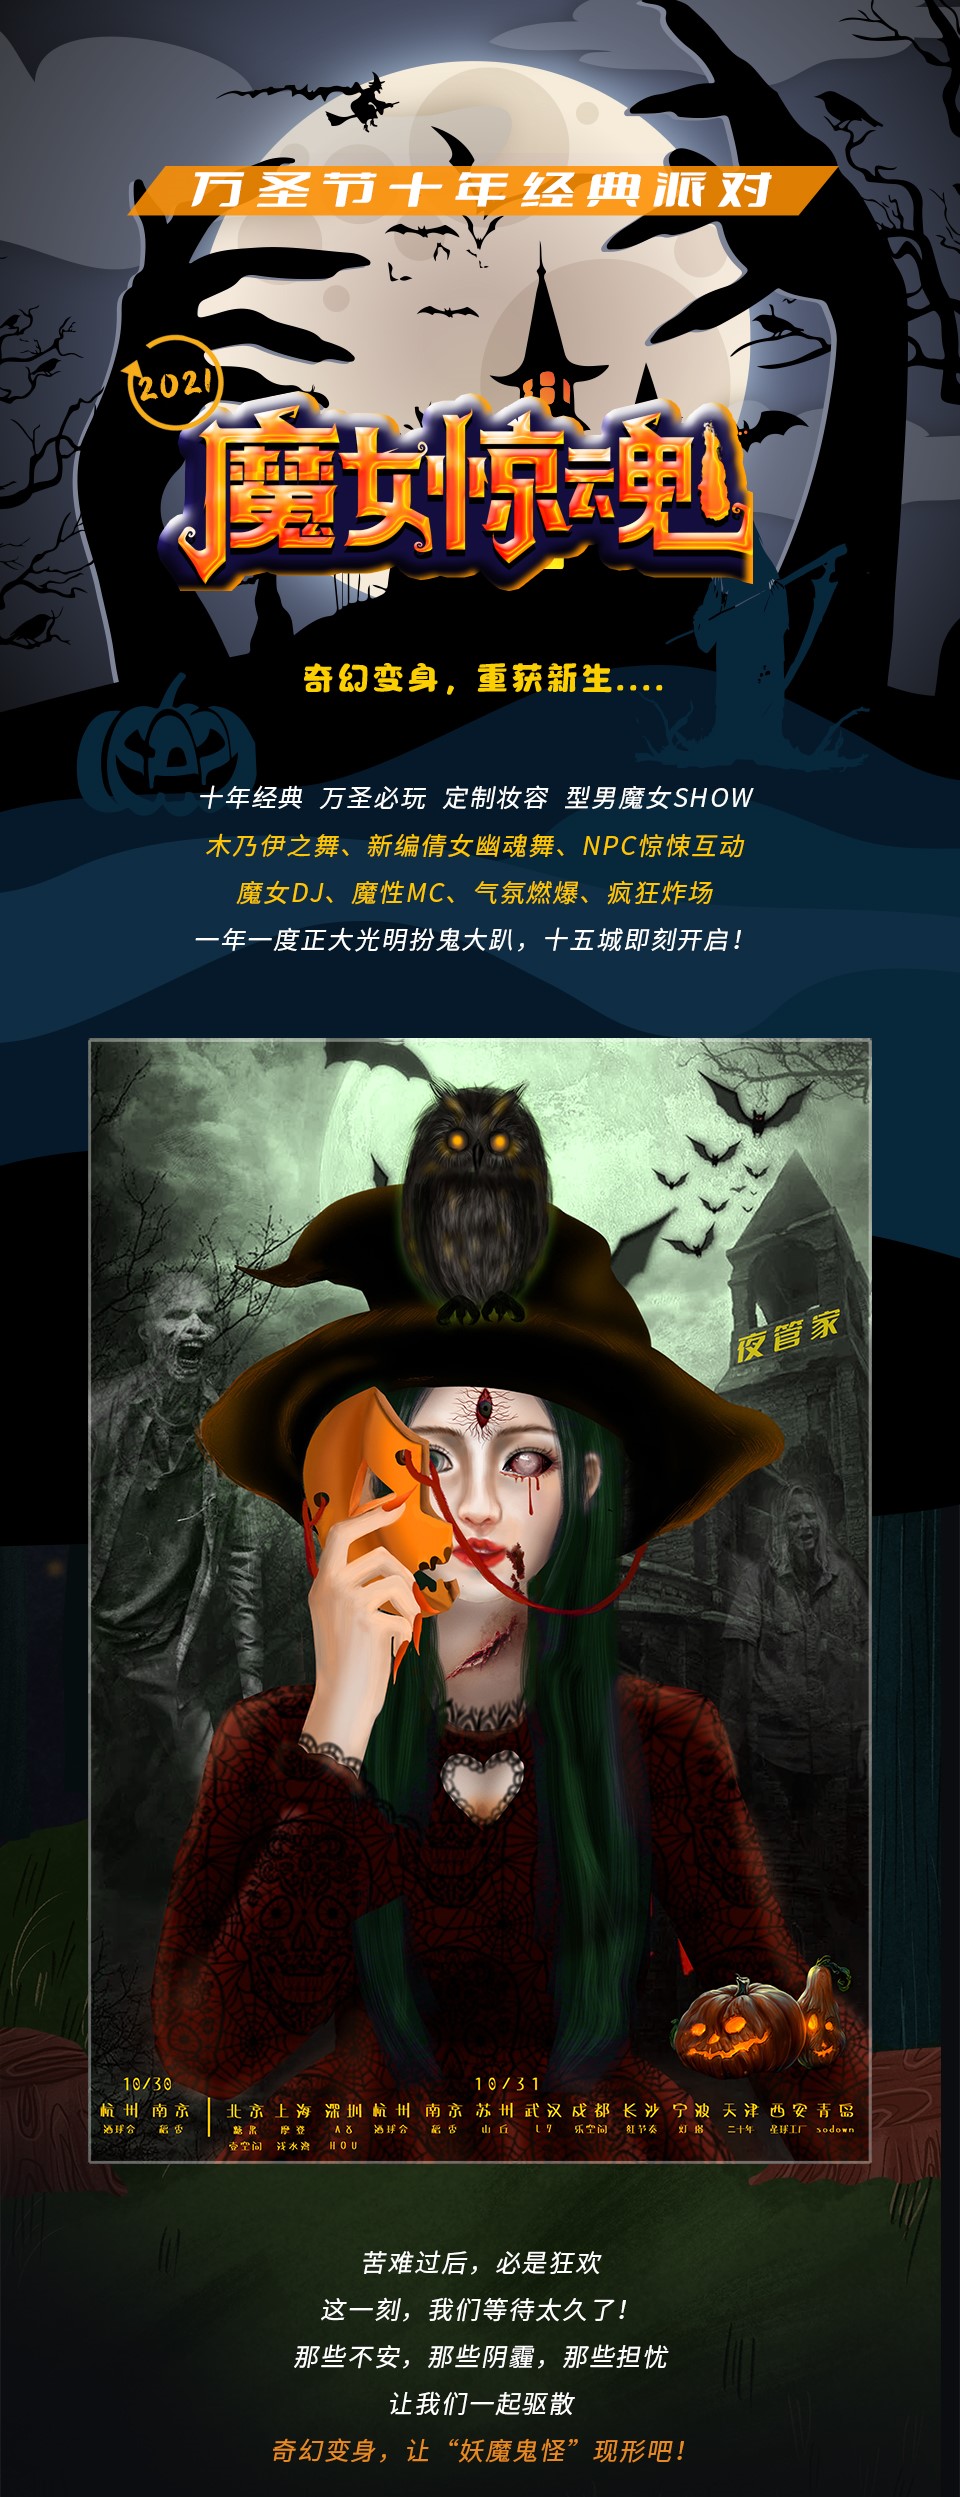 2021万圣节“魔女惊魂”变装惊悚派对—奇幻变身，重获新生-上海站